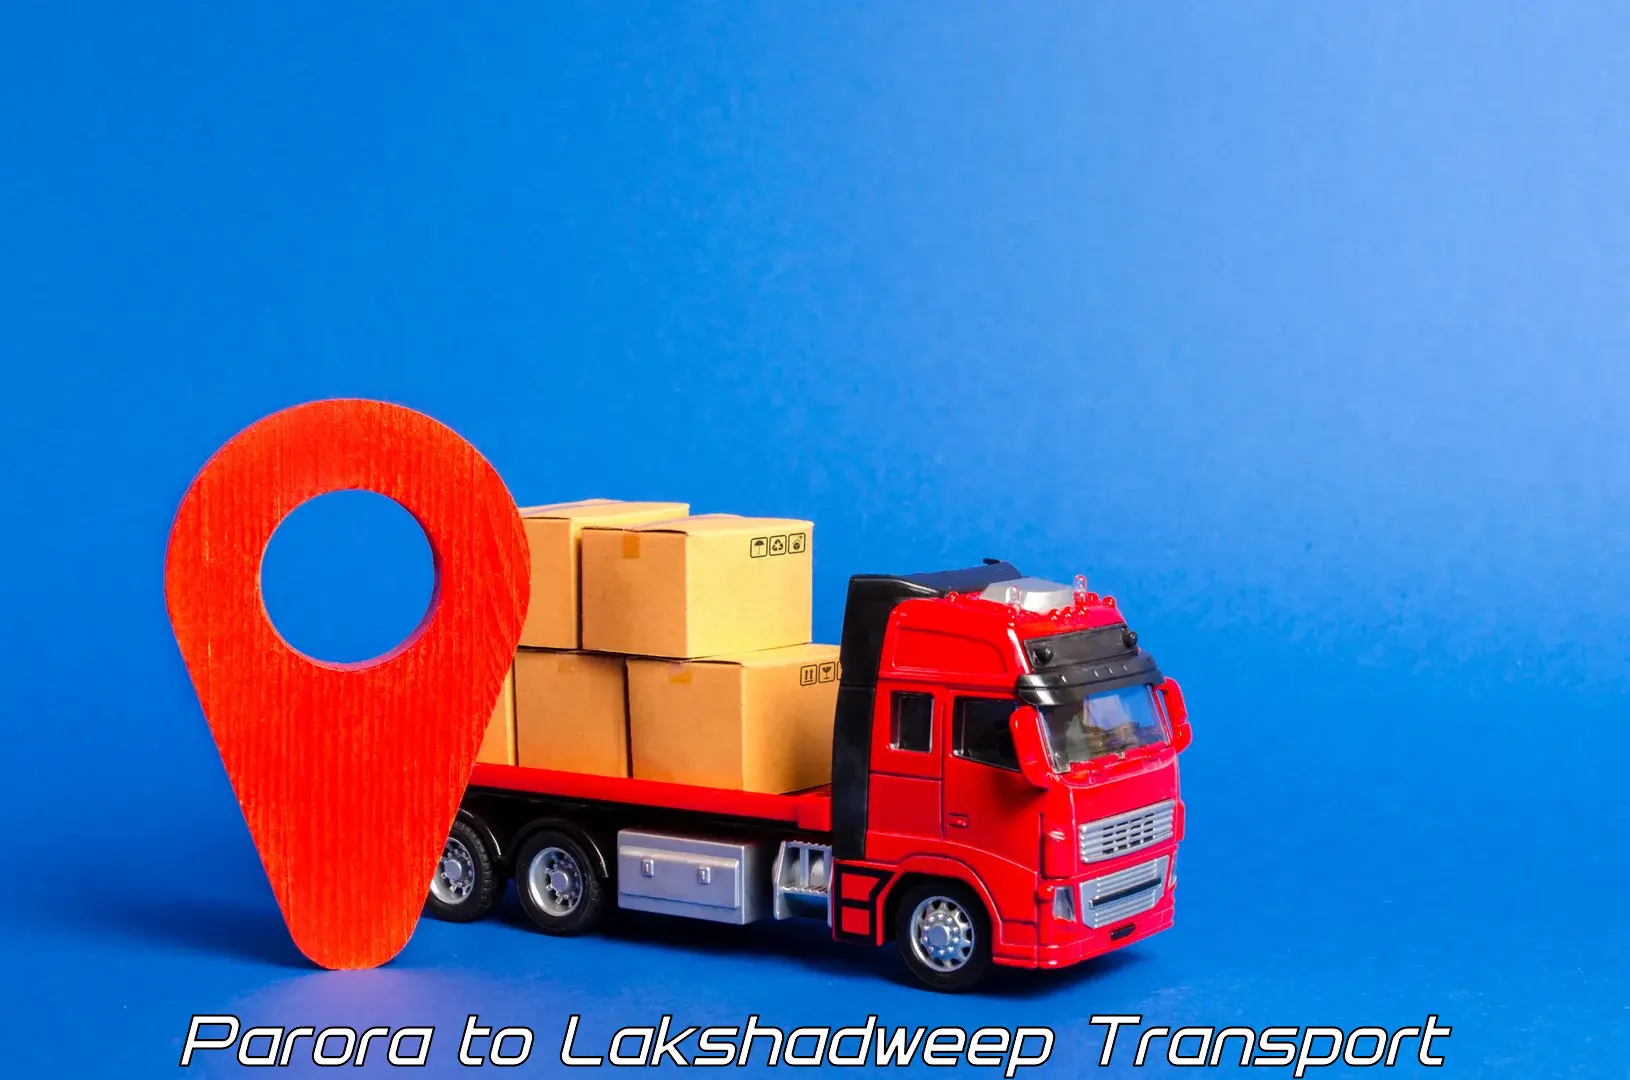 Bike transport service Parora to Lakshadweep